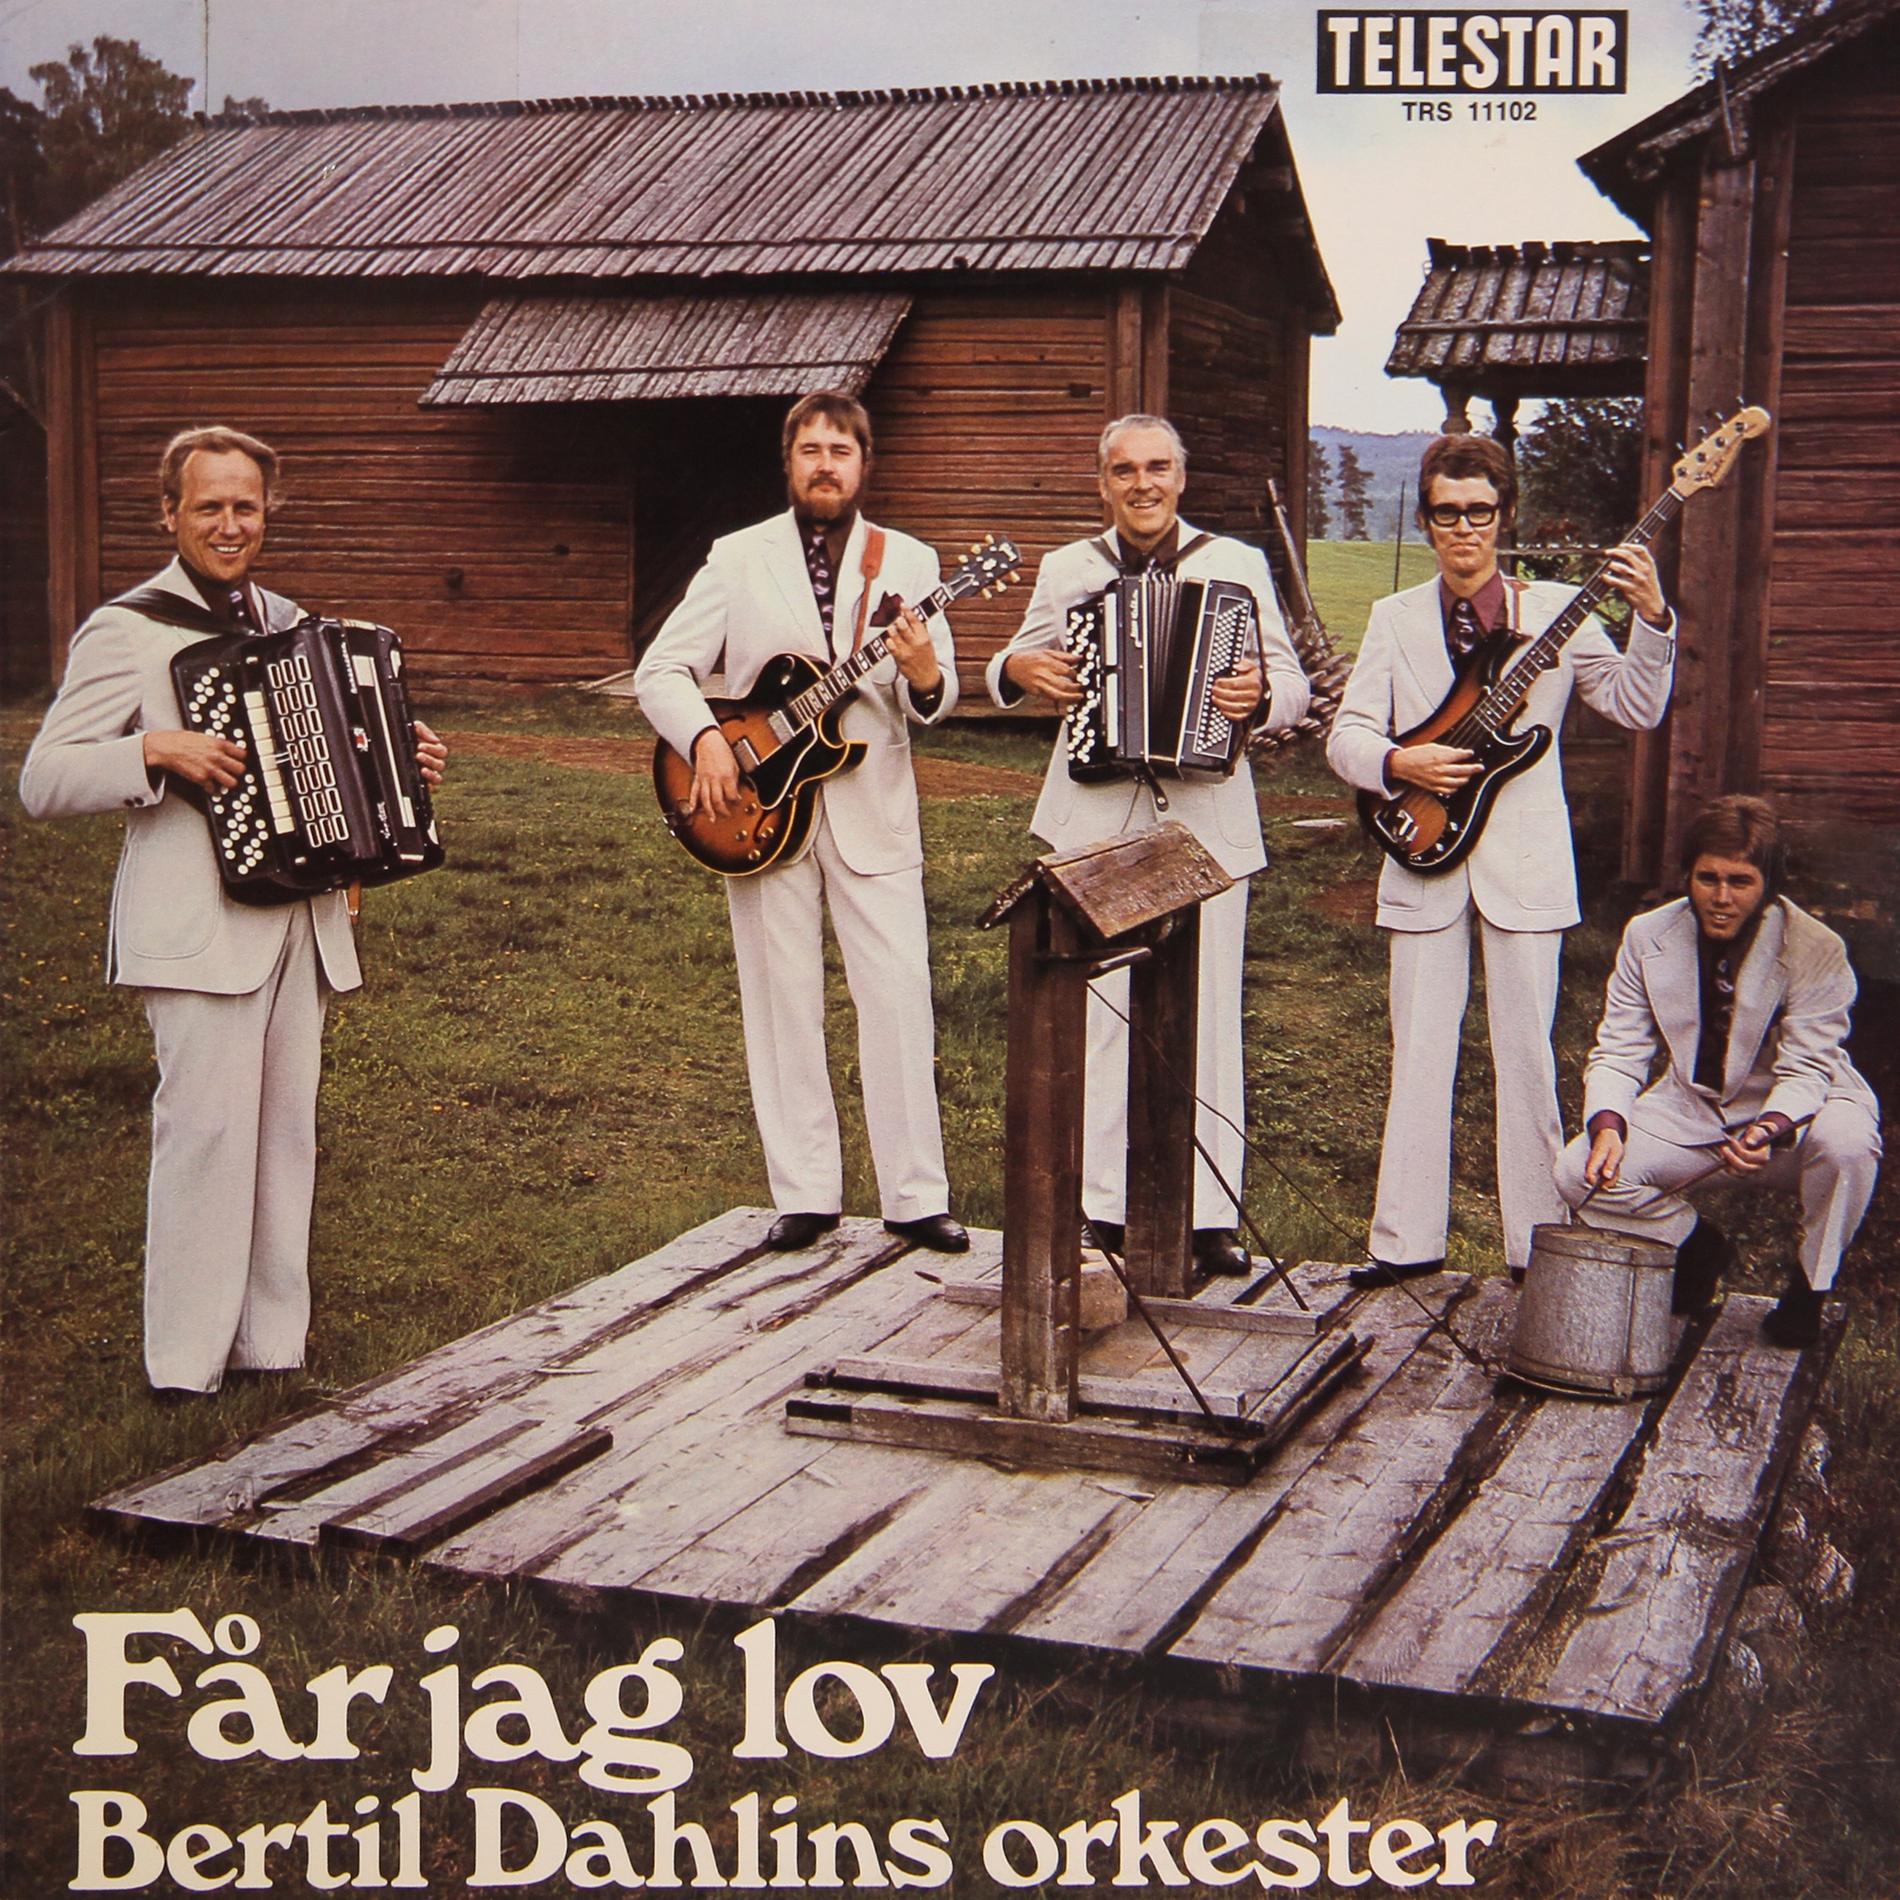 Bertil Dahlins Orkester Herr Drycks kommentar: Ge killen en riktig trumma för fan.
1971.